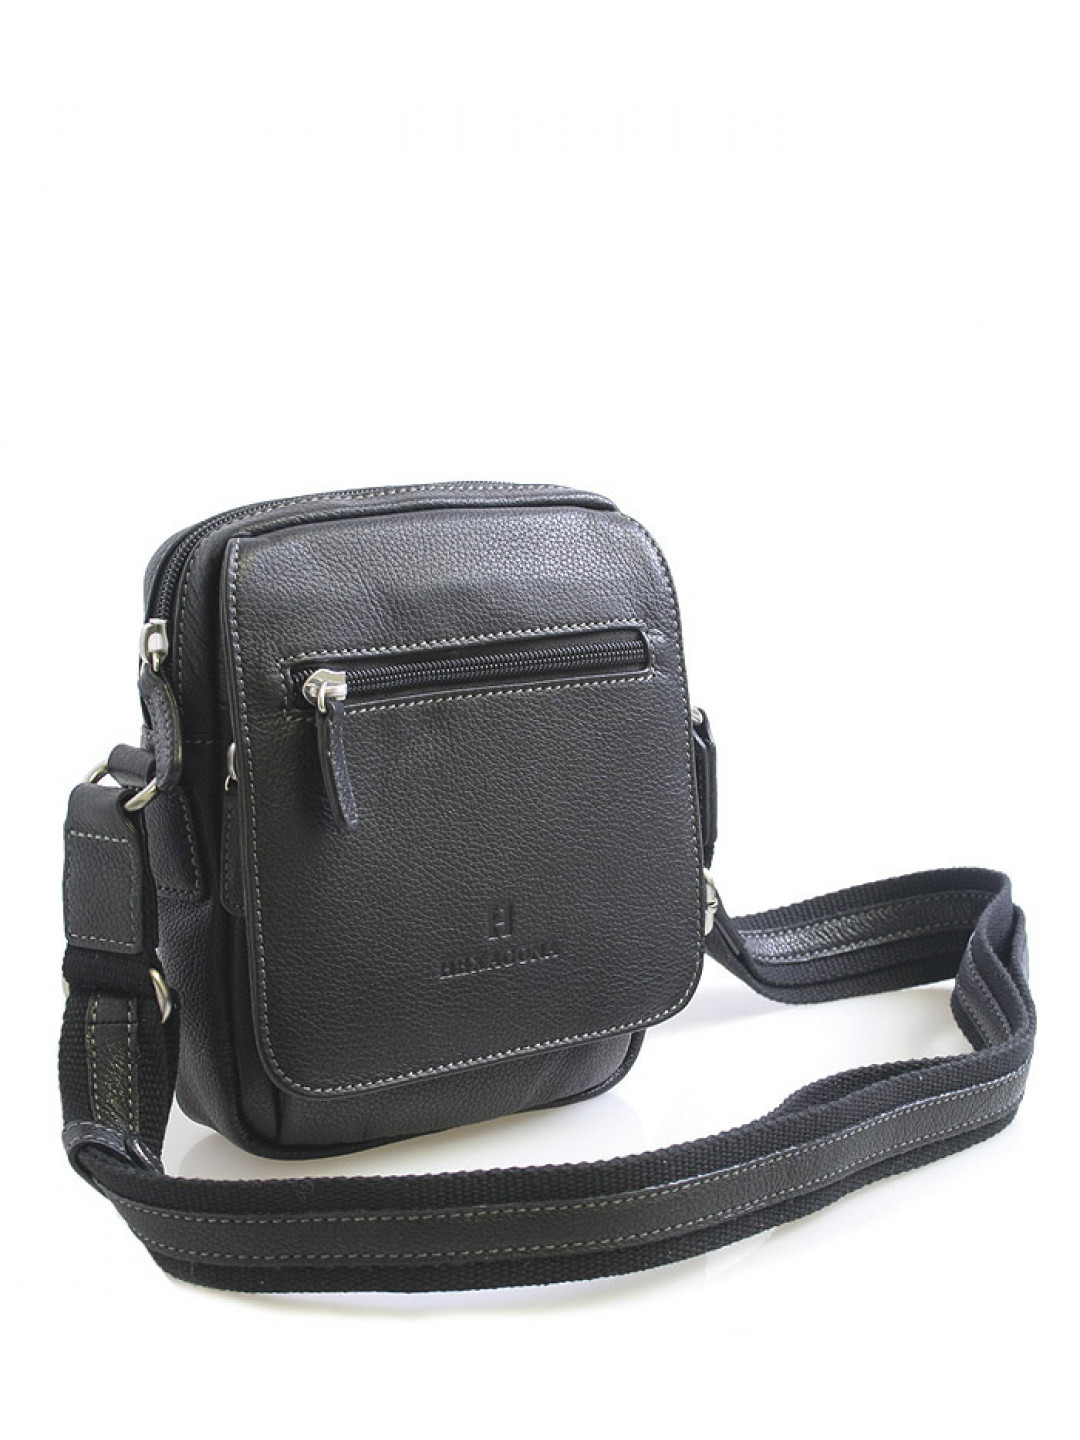 Luxusní černá kožená taška přes rameno Hexagona Xman